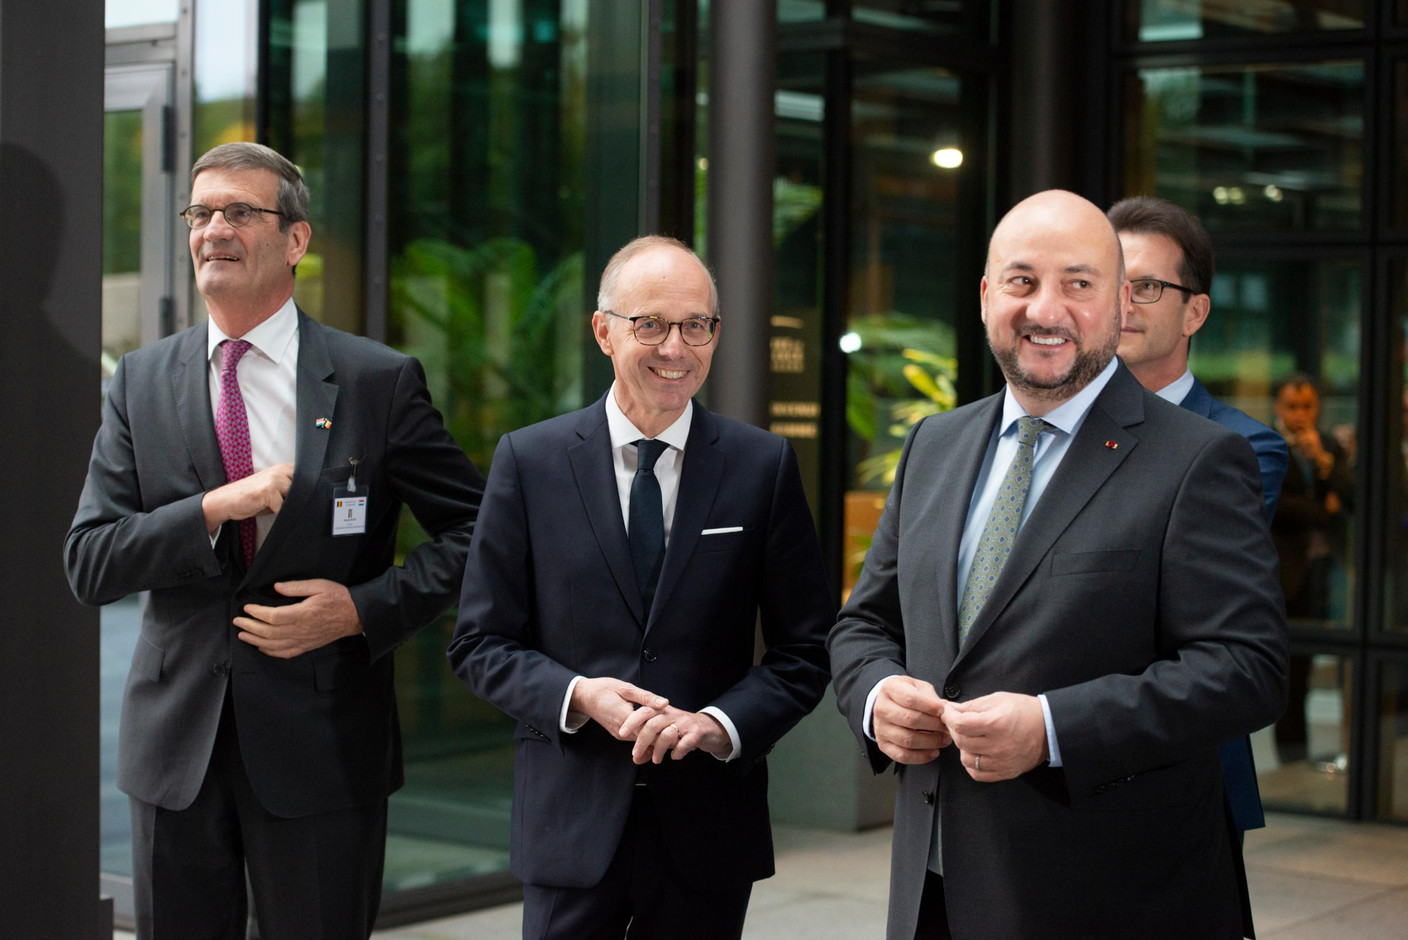 Bernard Gilliot (Fédération des
entreprises de Belgique), Luc Frieden (Chambre de commerce) et Étienne Schneider (vice-Premier ministre) (Photo: Anthony Dehez)